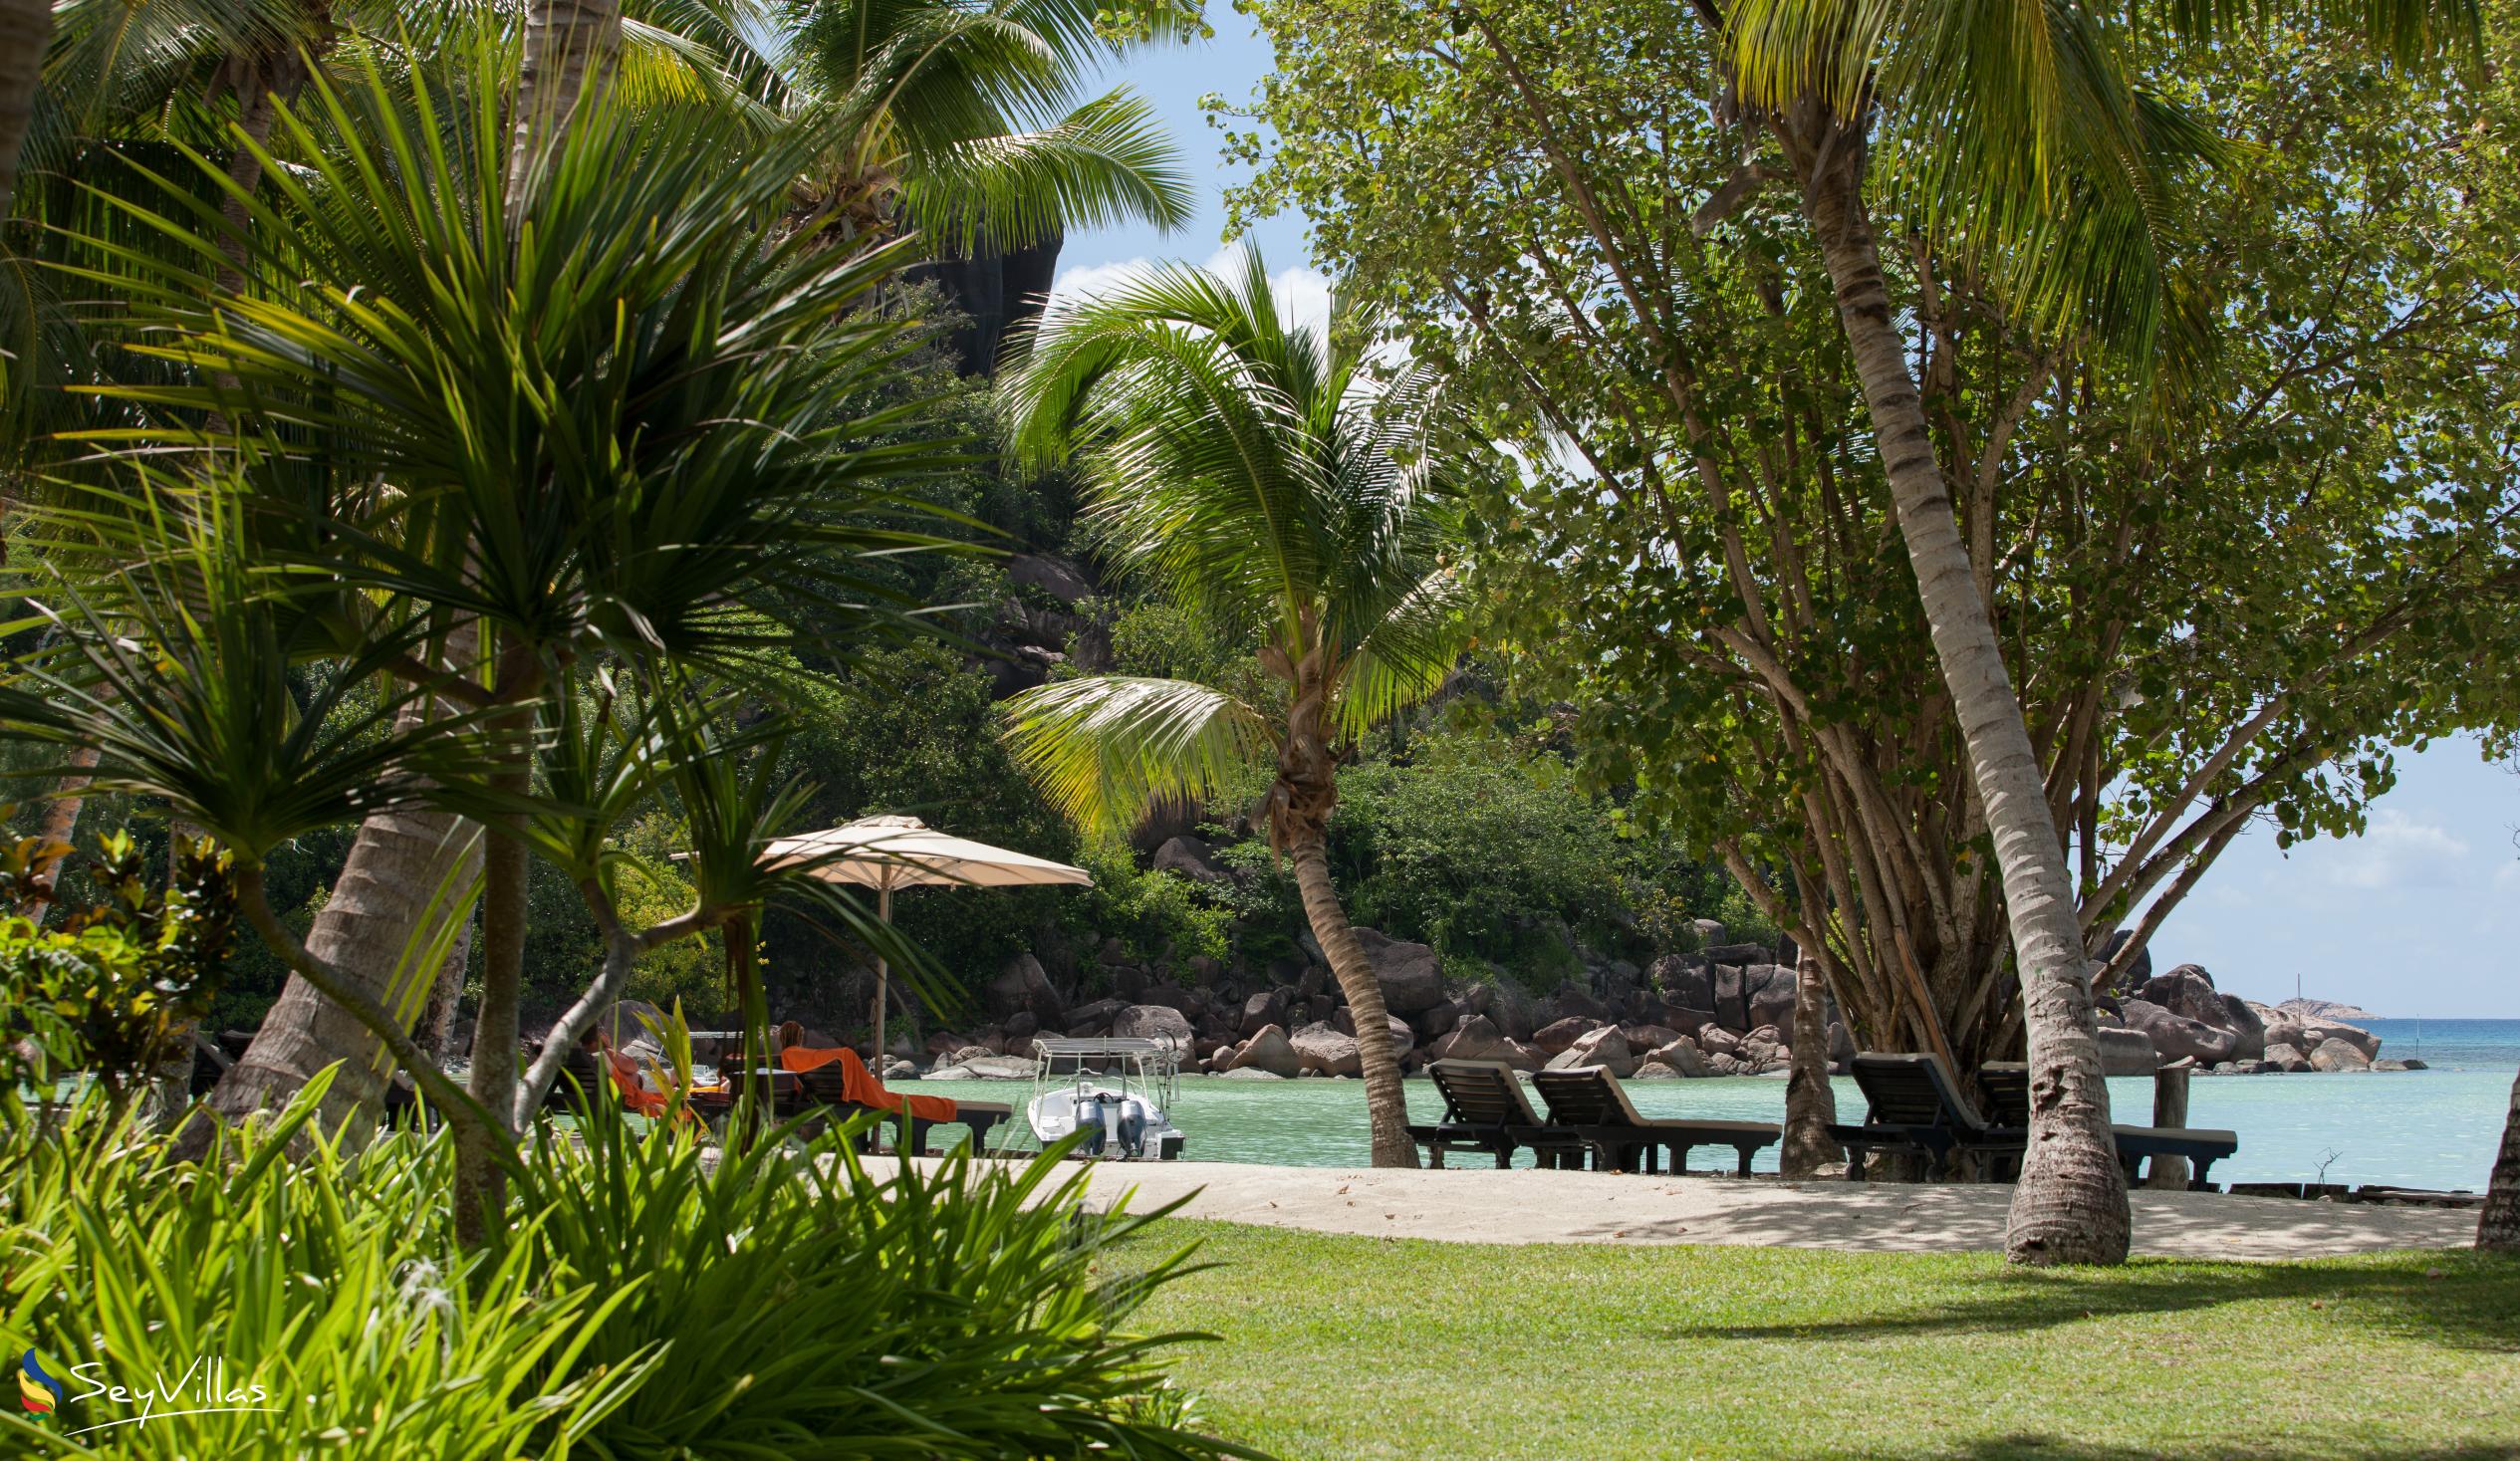 Foto 13: Paradise Sun Hotel - Aussenbereich - Praslin (Seychellen)